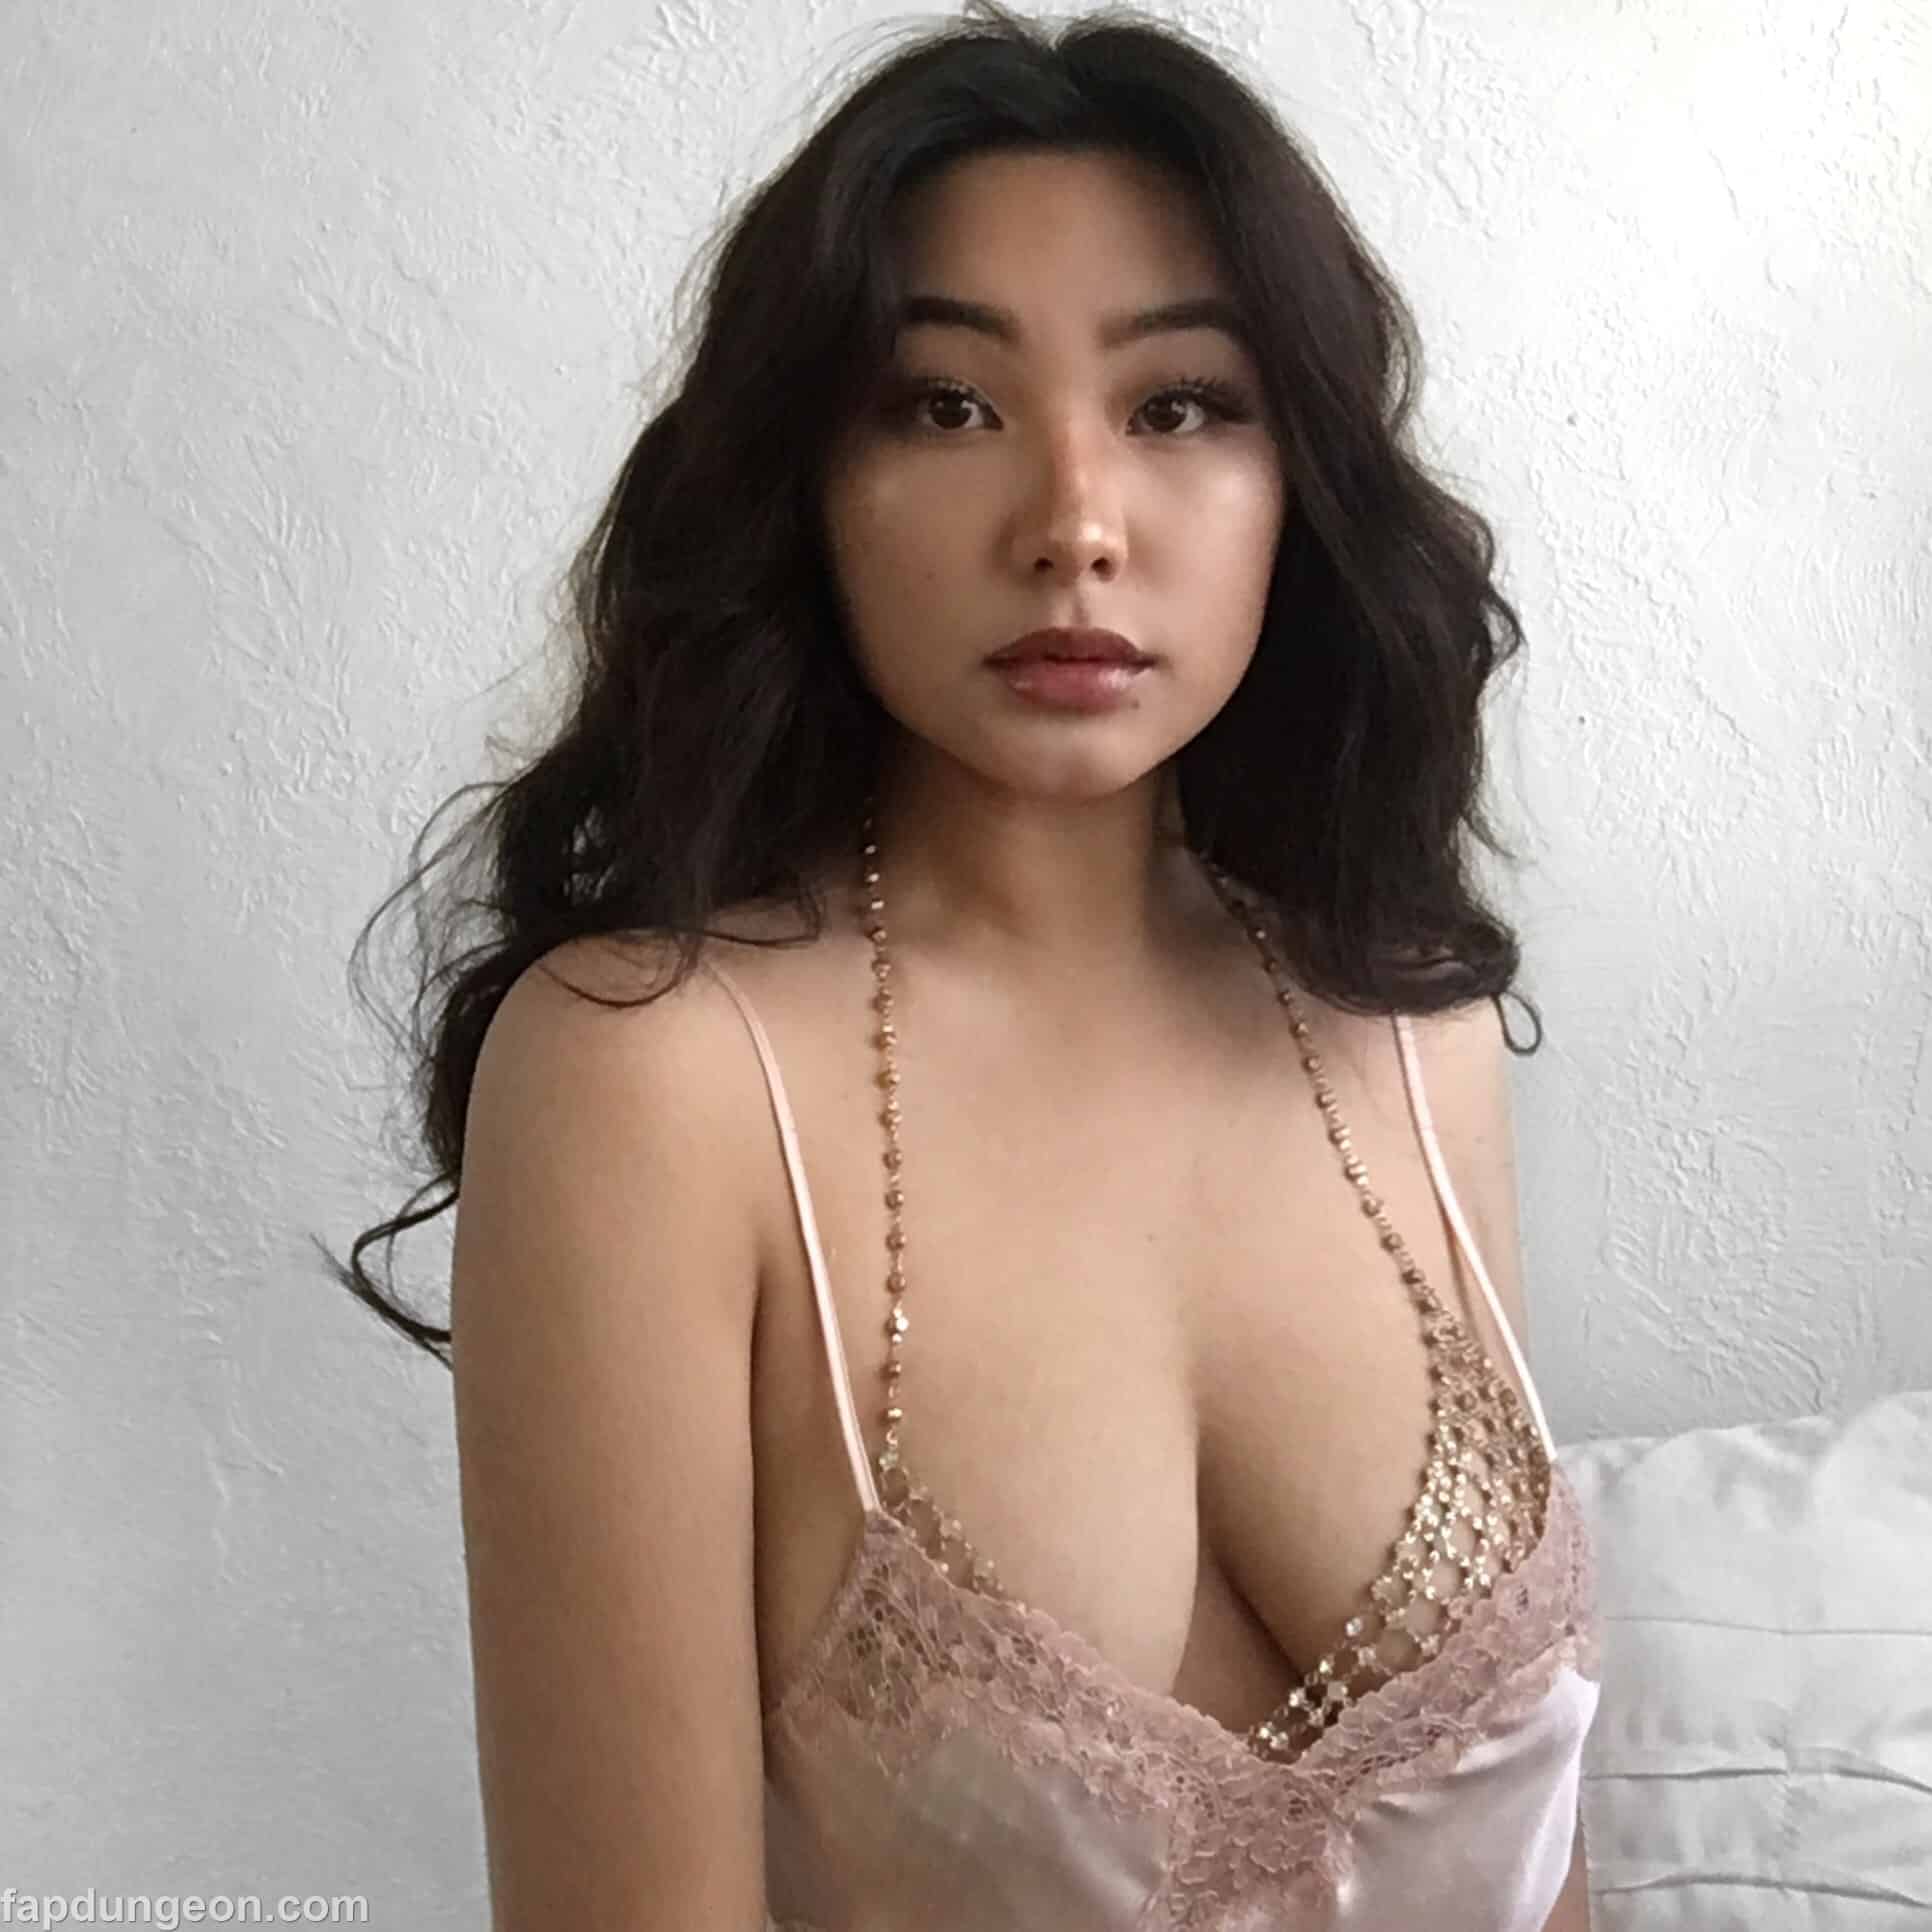 Nathaliewrth nude asian model